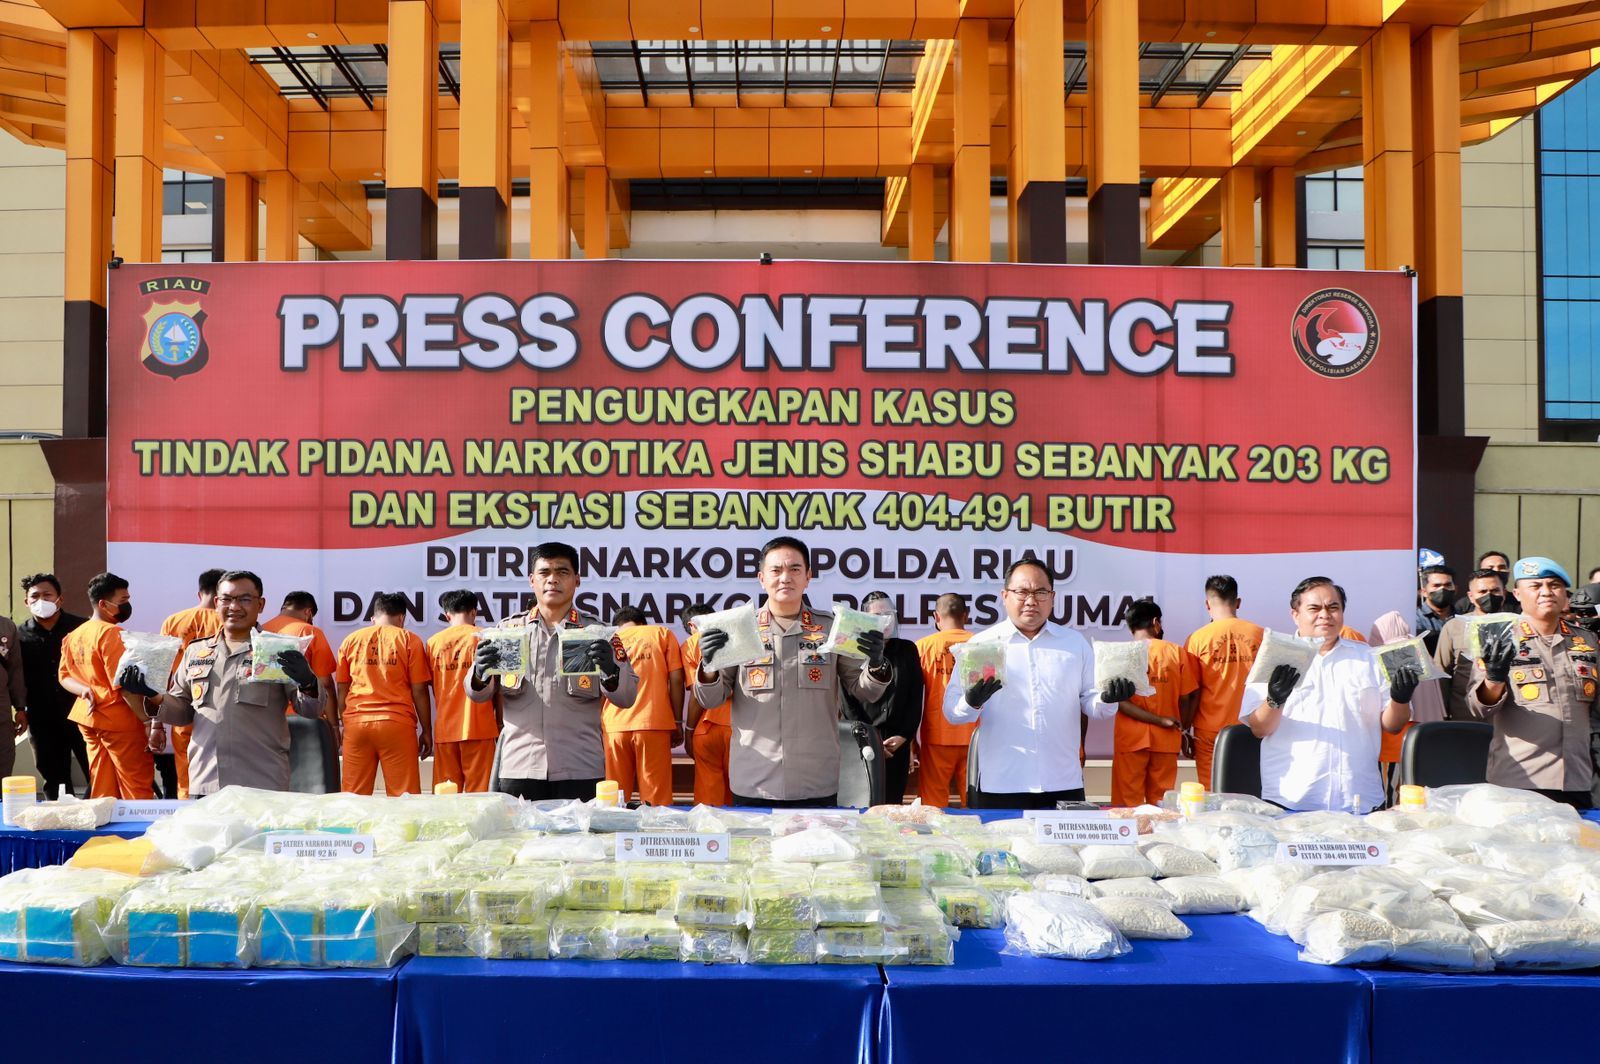 Polda Riau berhasil mengamankan barang bukti berupa 203 kg sabu dan 404.491 butir ekstasi dalam kurun waktu 4 hari dan menjadi prestasi terbesar Polda Riau dalam pengungkapan kasus narkoba.